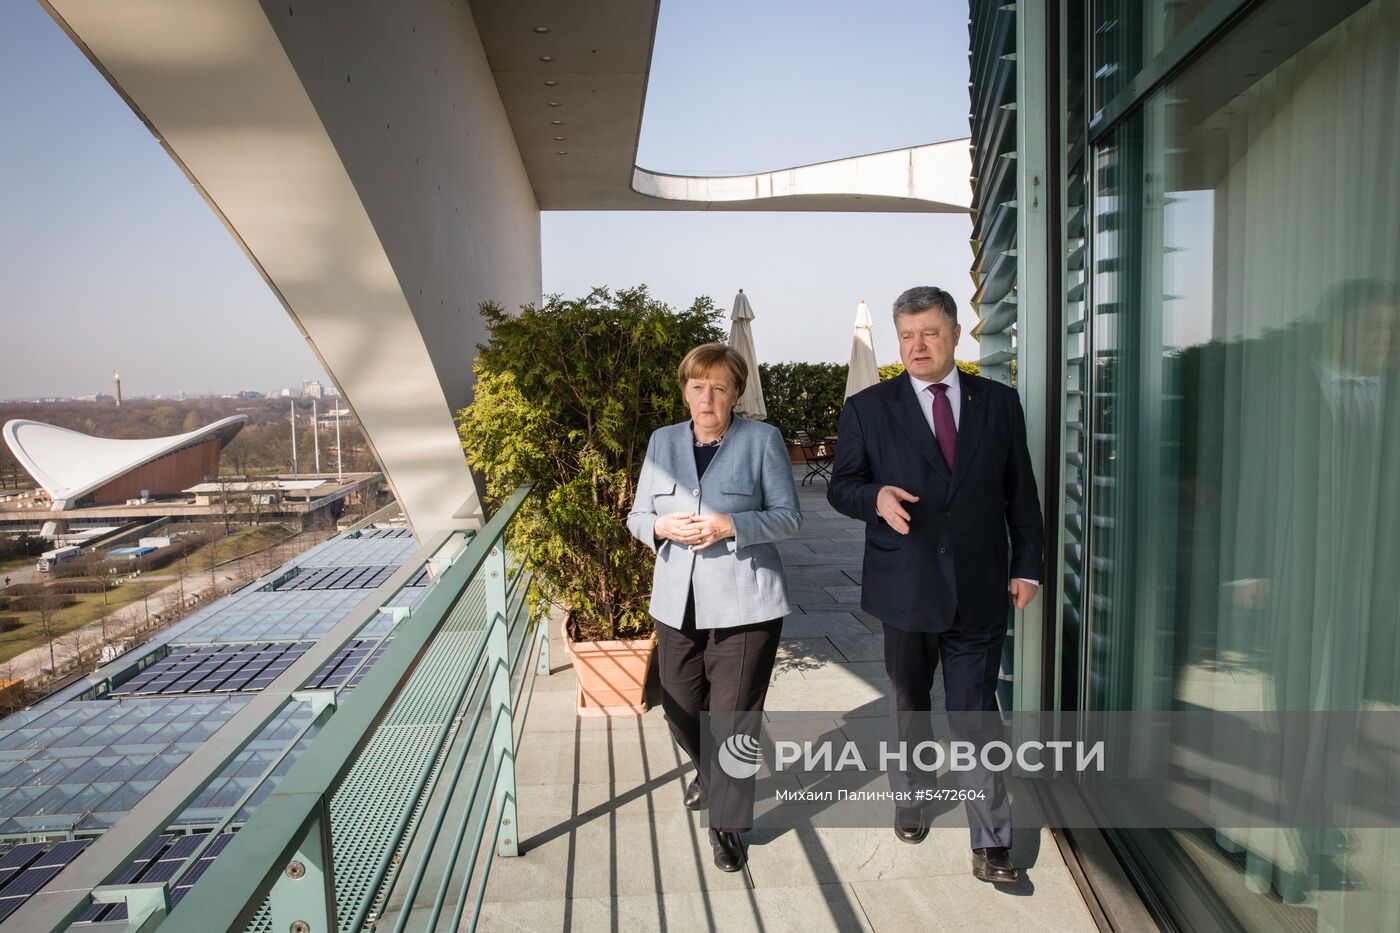  Визит президента Украины П. Порошенко в Германию